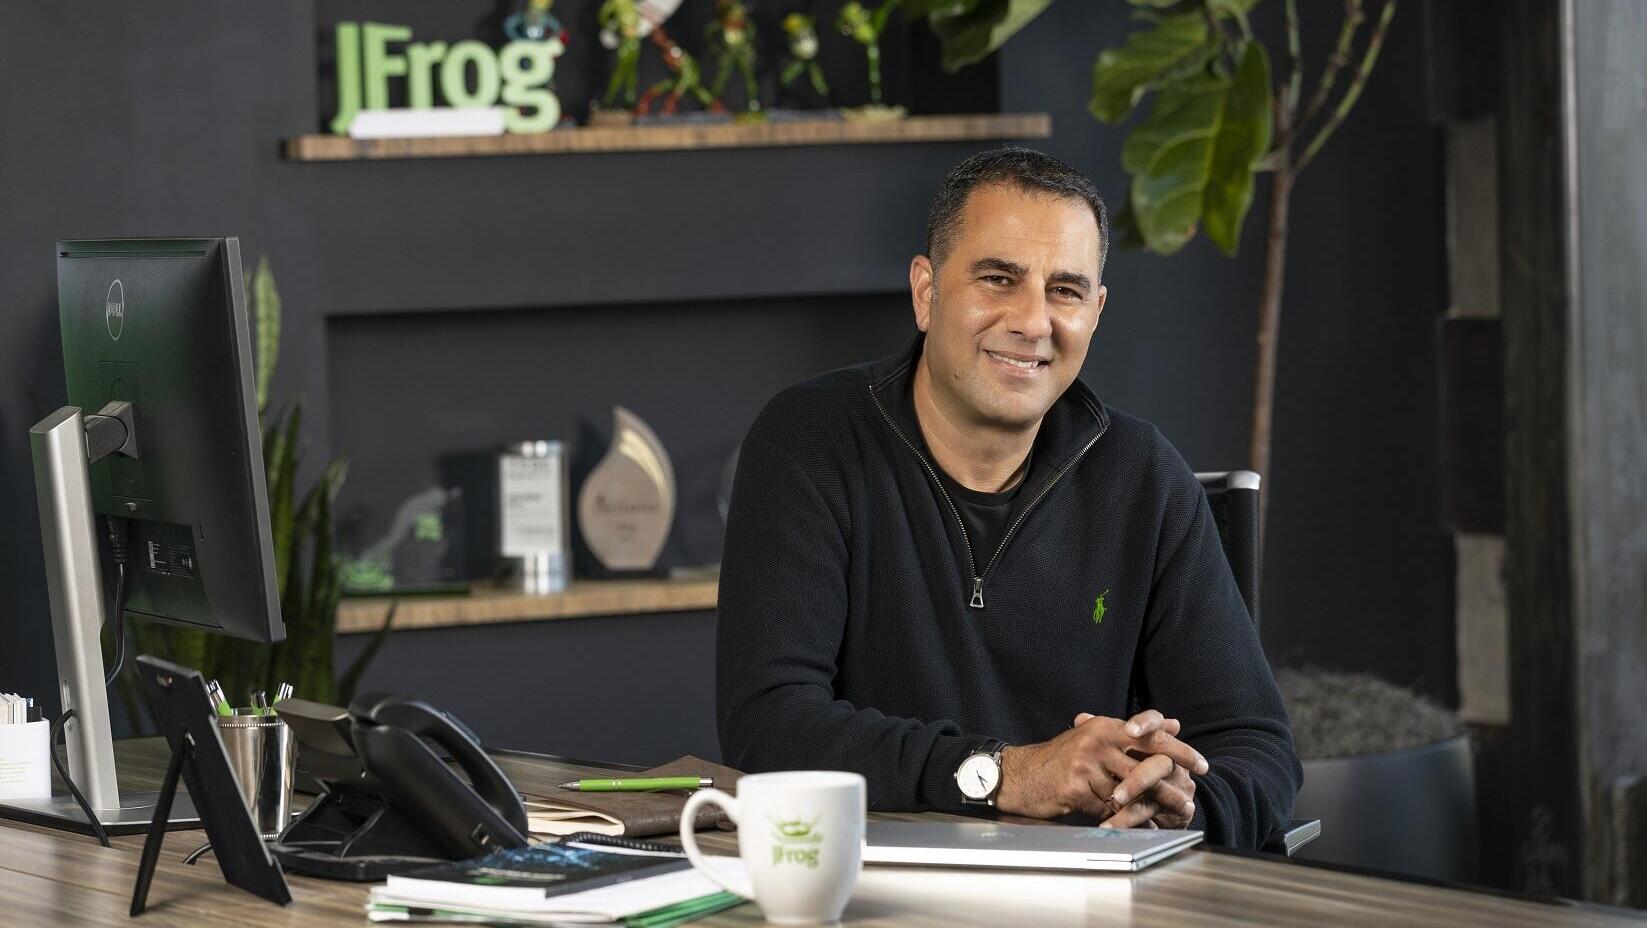 Shlomi Ben Haim, CEO of JFrog